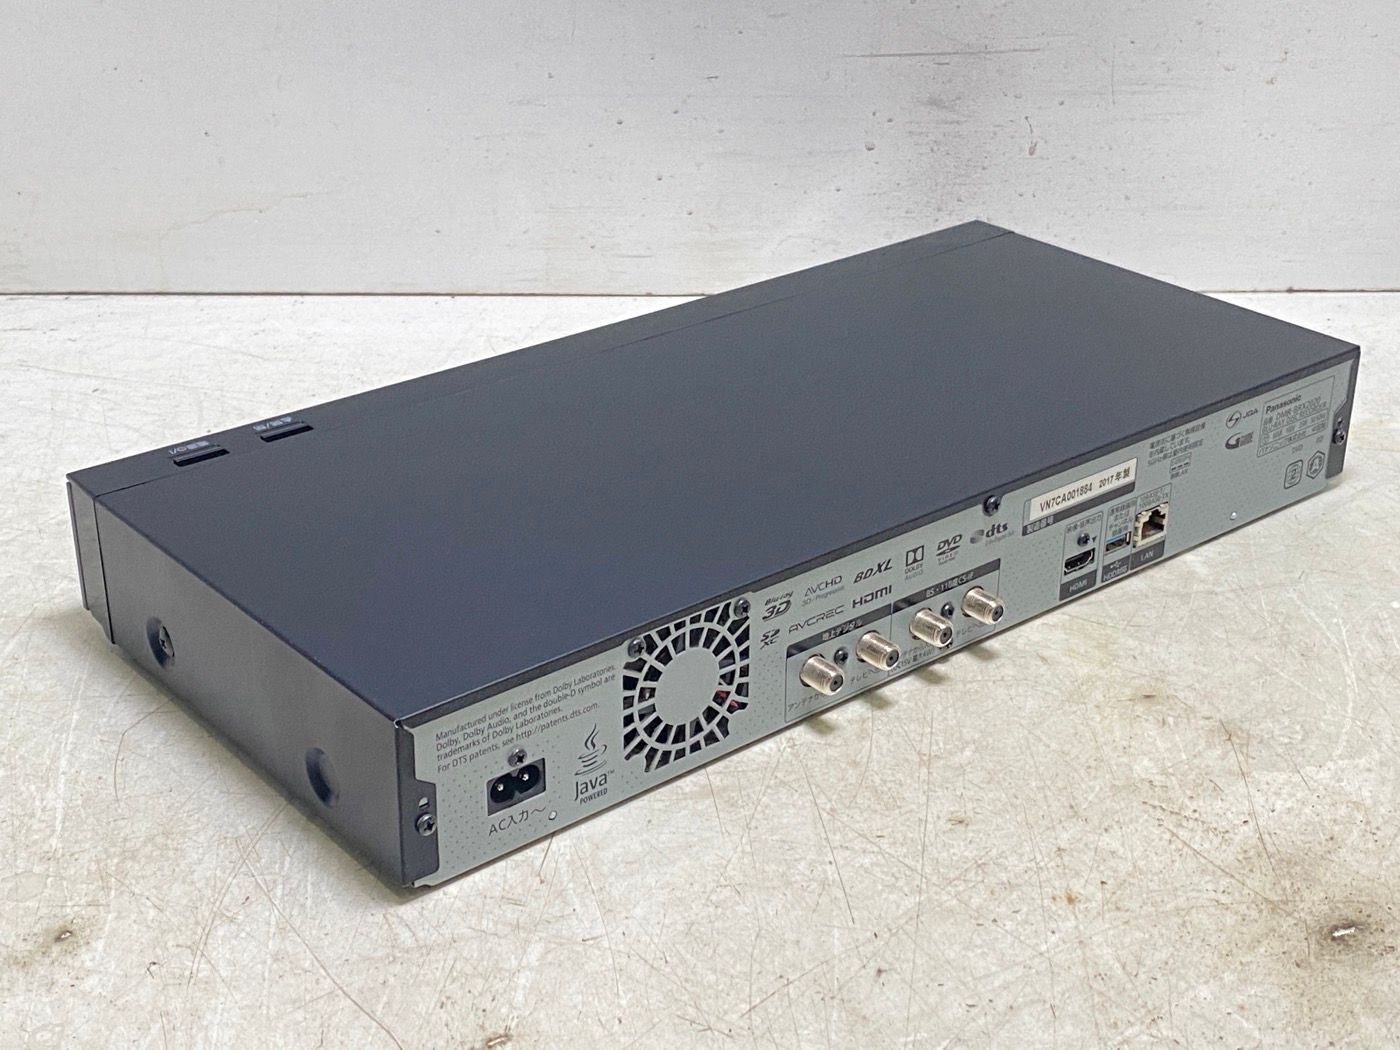 パナソニック 2TB 7チューナー ブルーレイレコーダー 全録 6チャンネル同時録画 4Kアップコンバート対応 ブラック 全自動 DIGA  DMR-BRX2020 - メルカリ